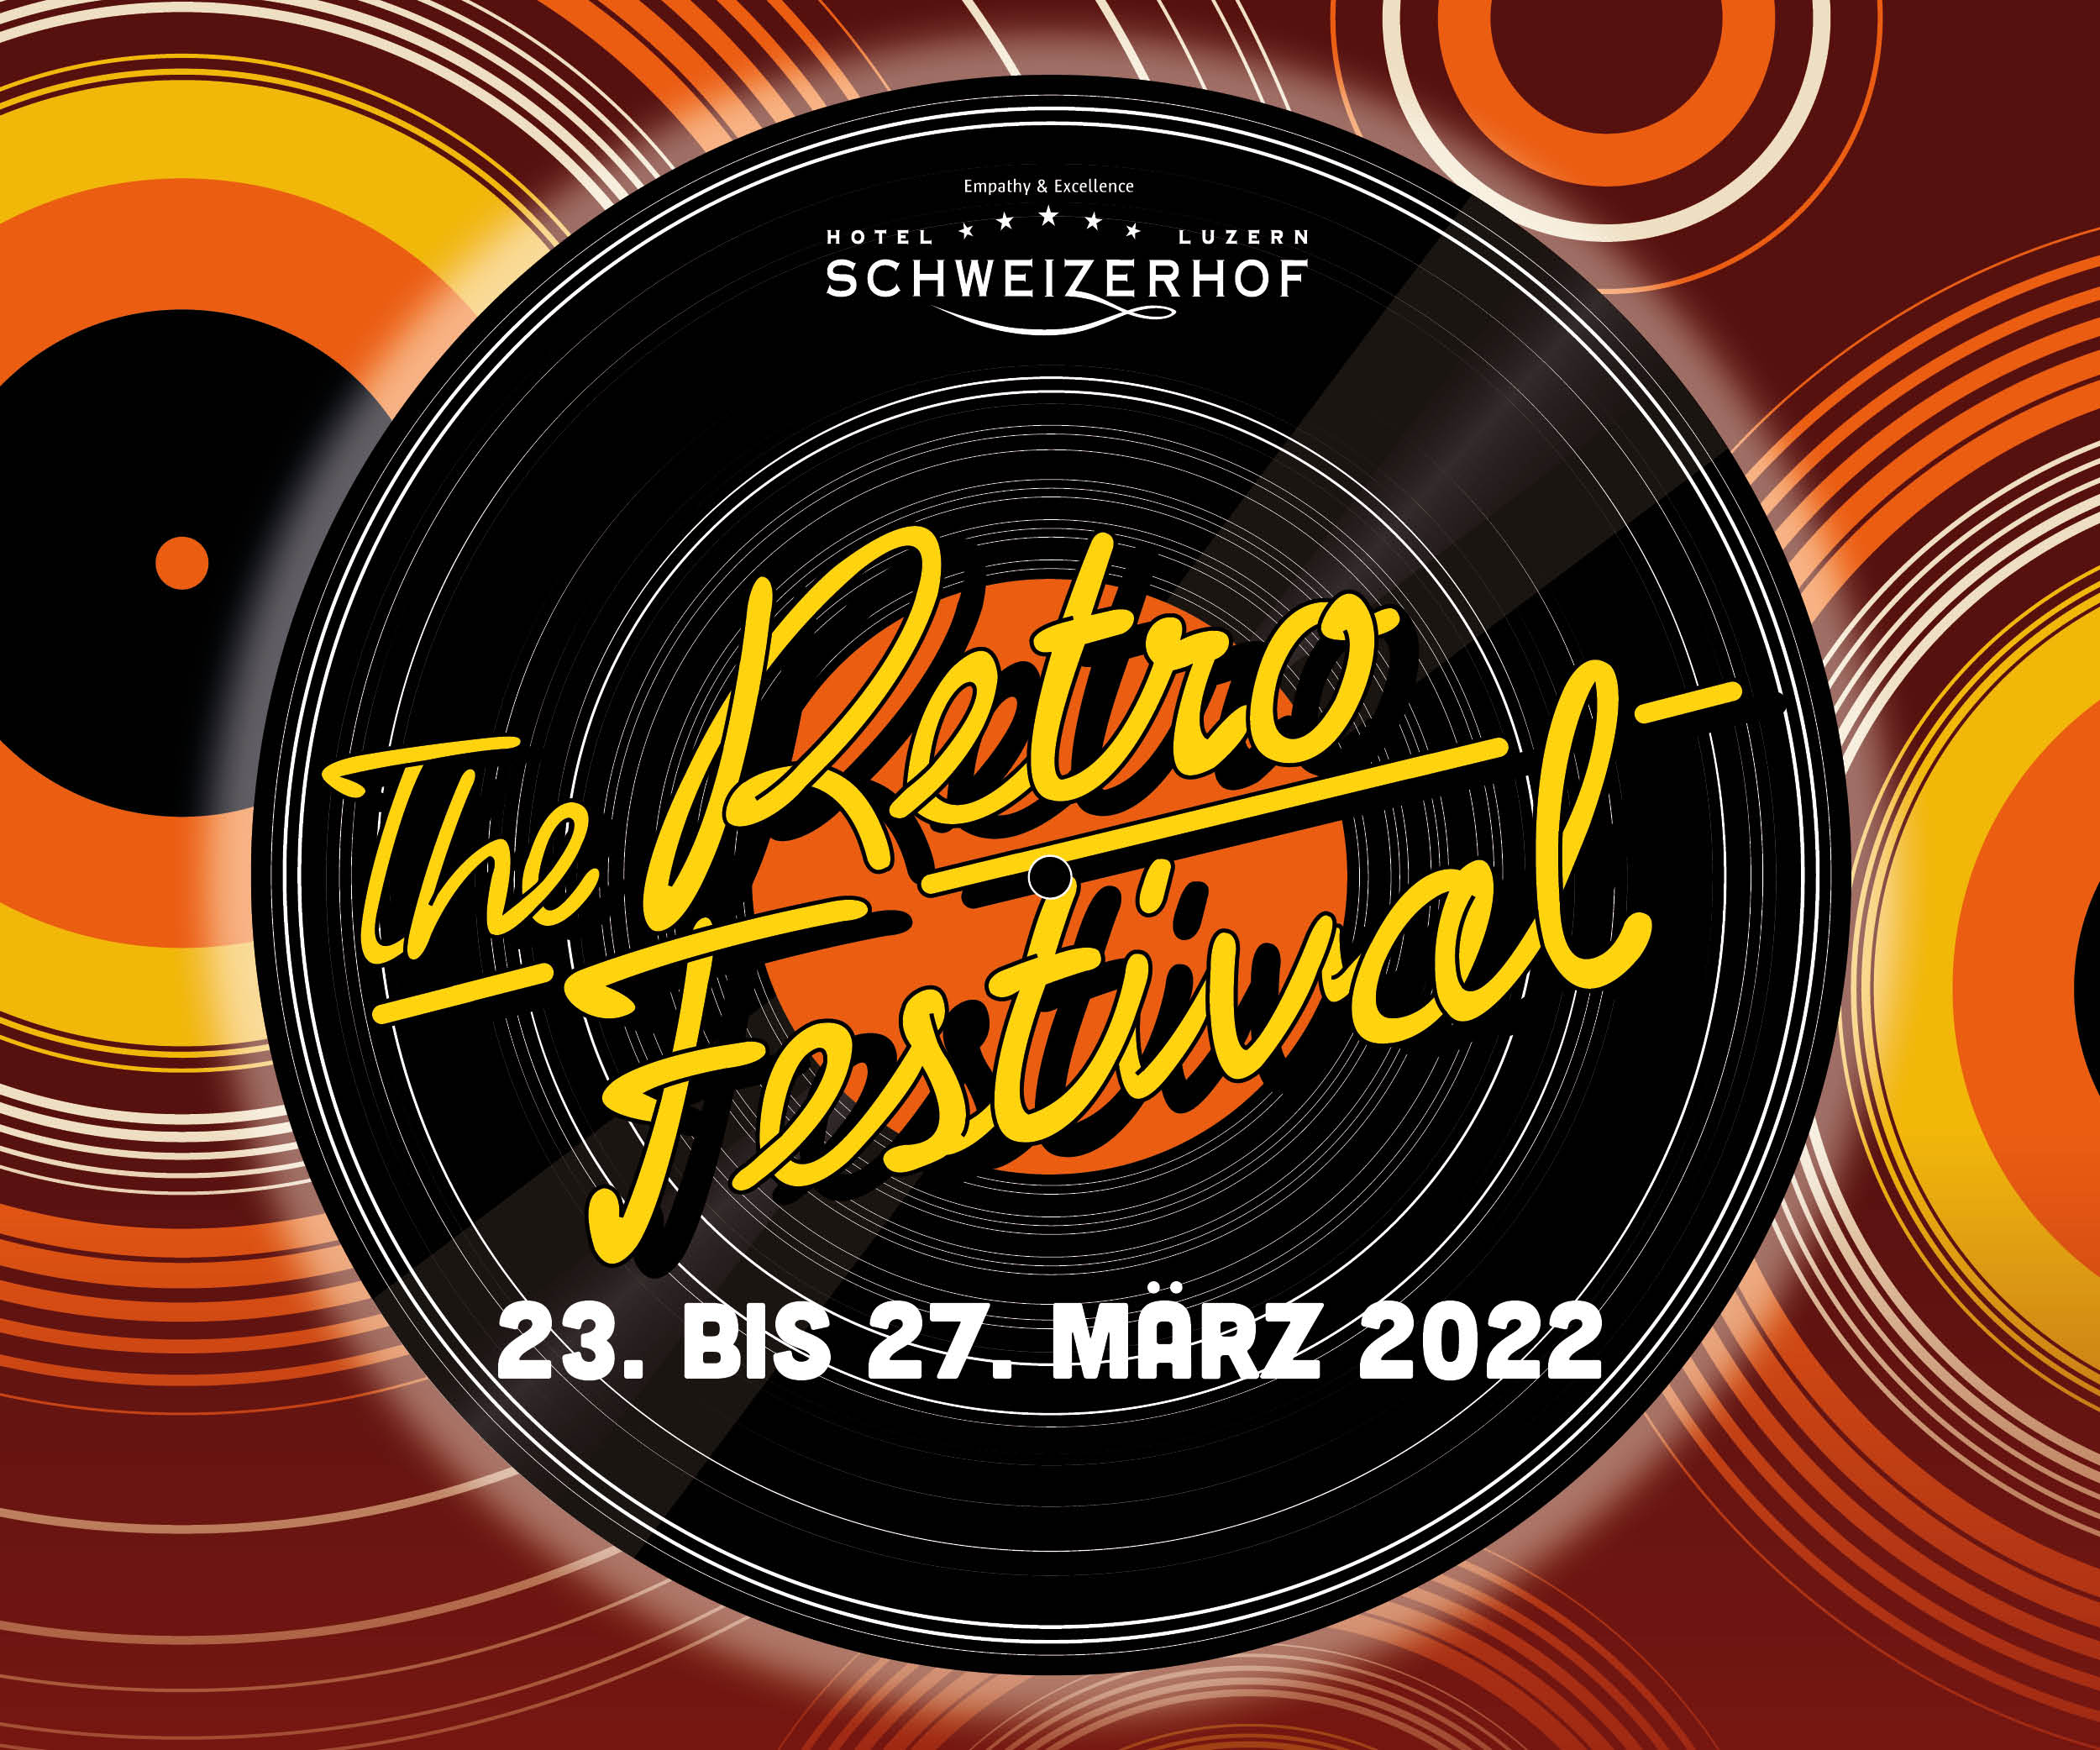 The Retro Festival 2022 - Festivalpass